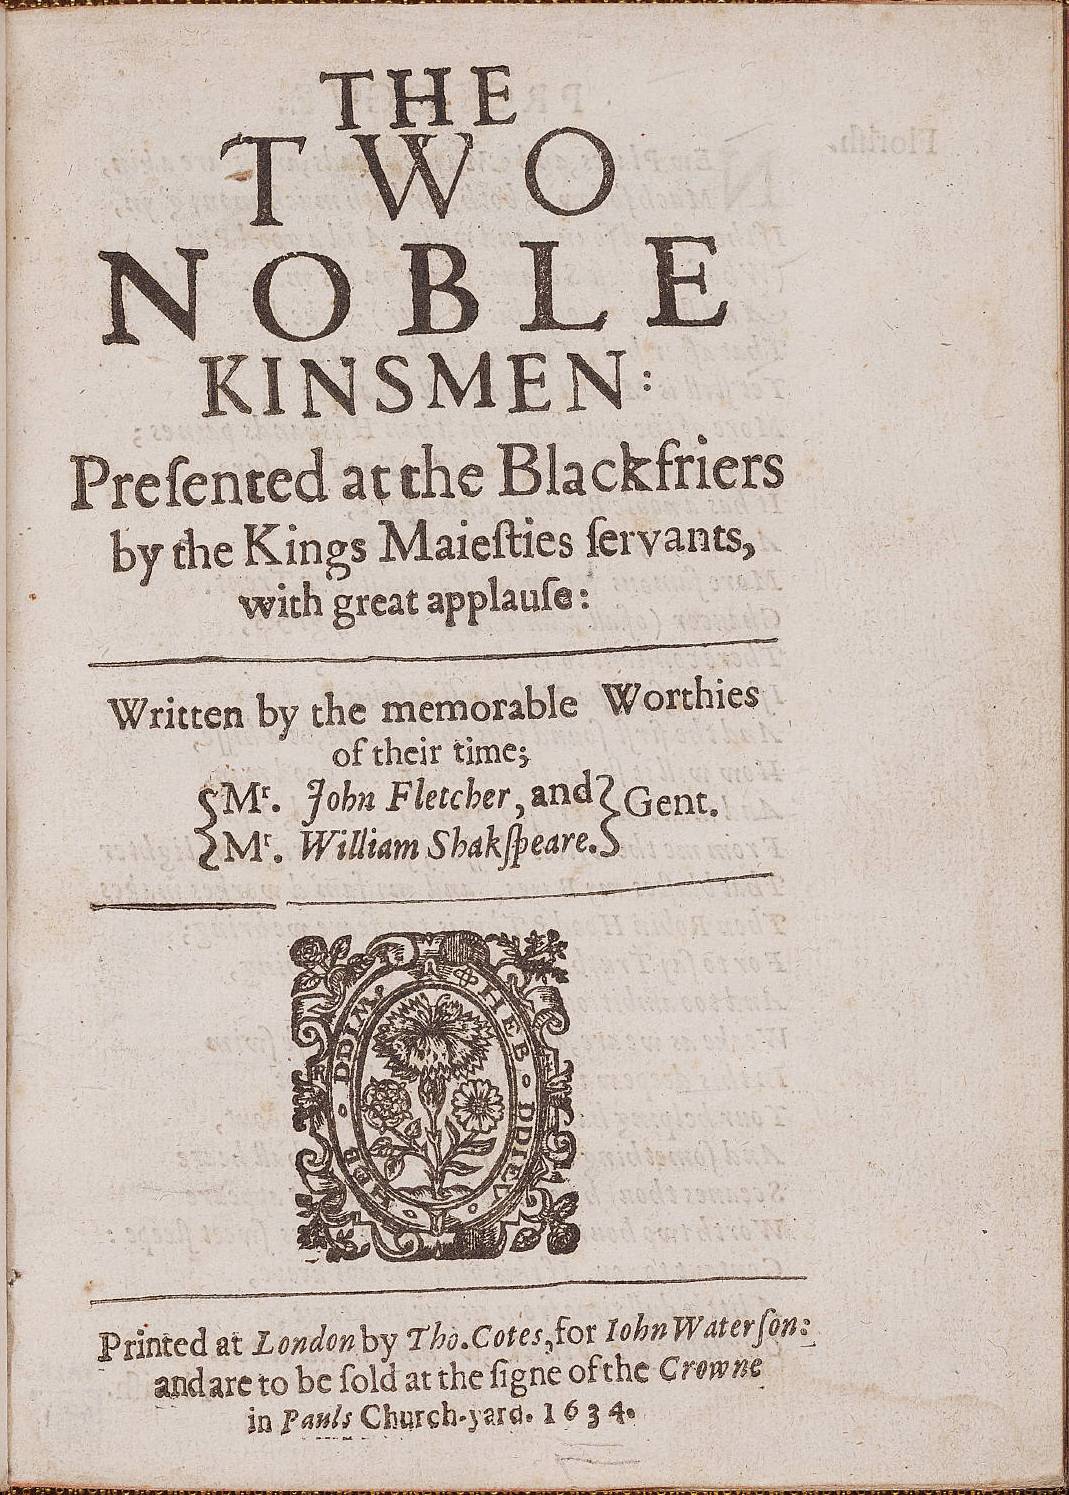 The_Two_Noble_Kinsmen_by_John_Fletcher_William_Shakespeare_1634